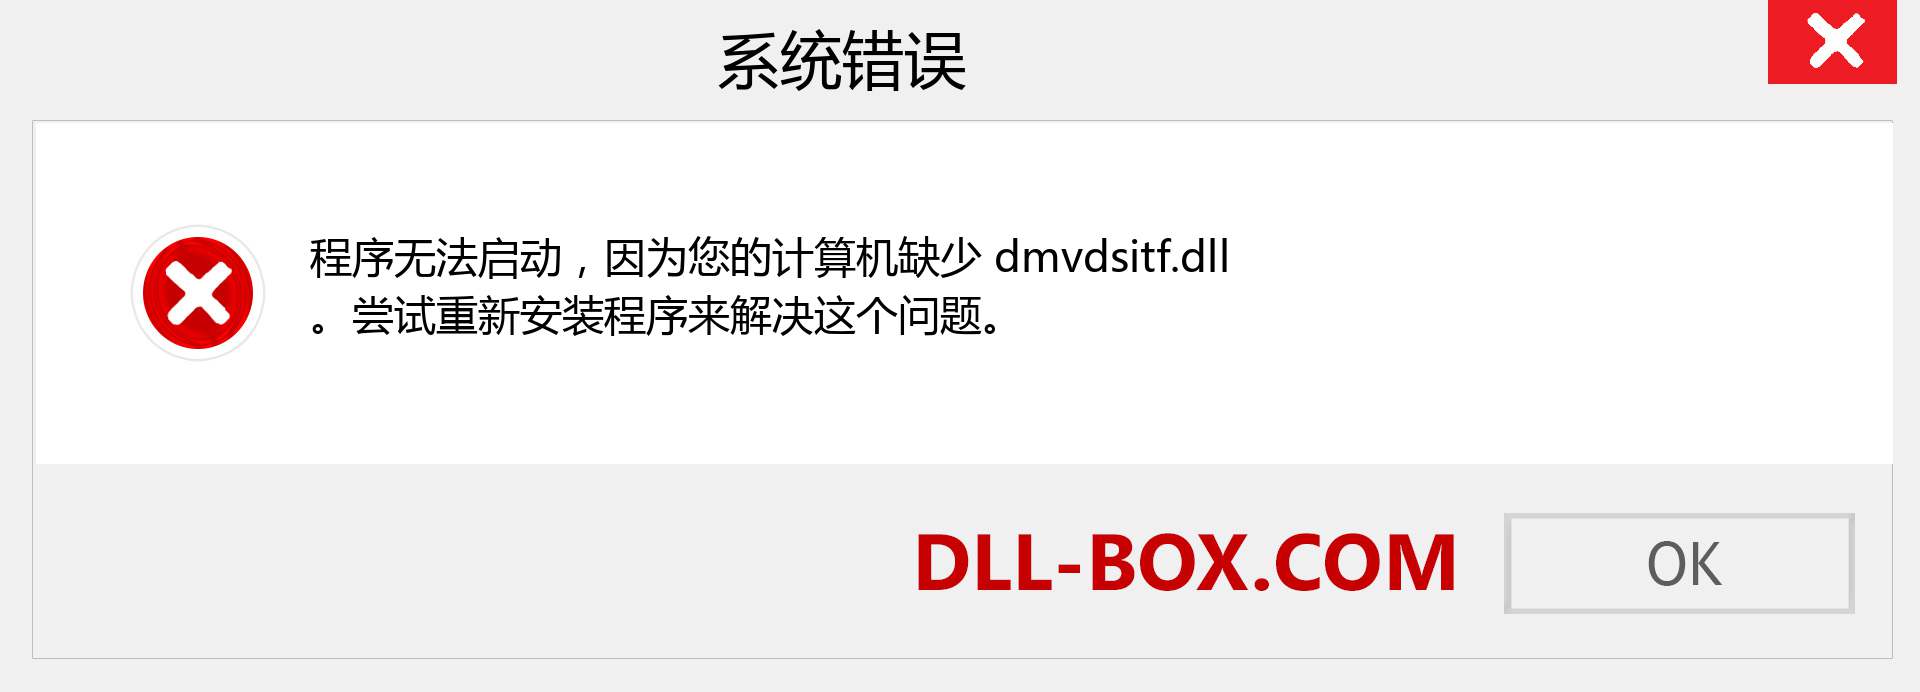 dmvdsitf.dll 文件丢失？。 适用于 Windows 7、8、10 的下载 - 修复 Windows、照片、图像上的 dmvdsitf dll 丢失错误